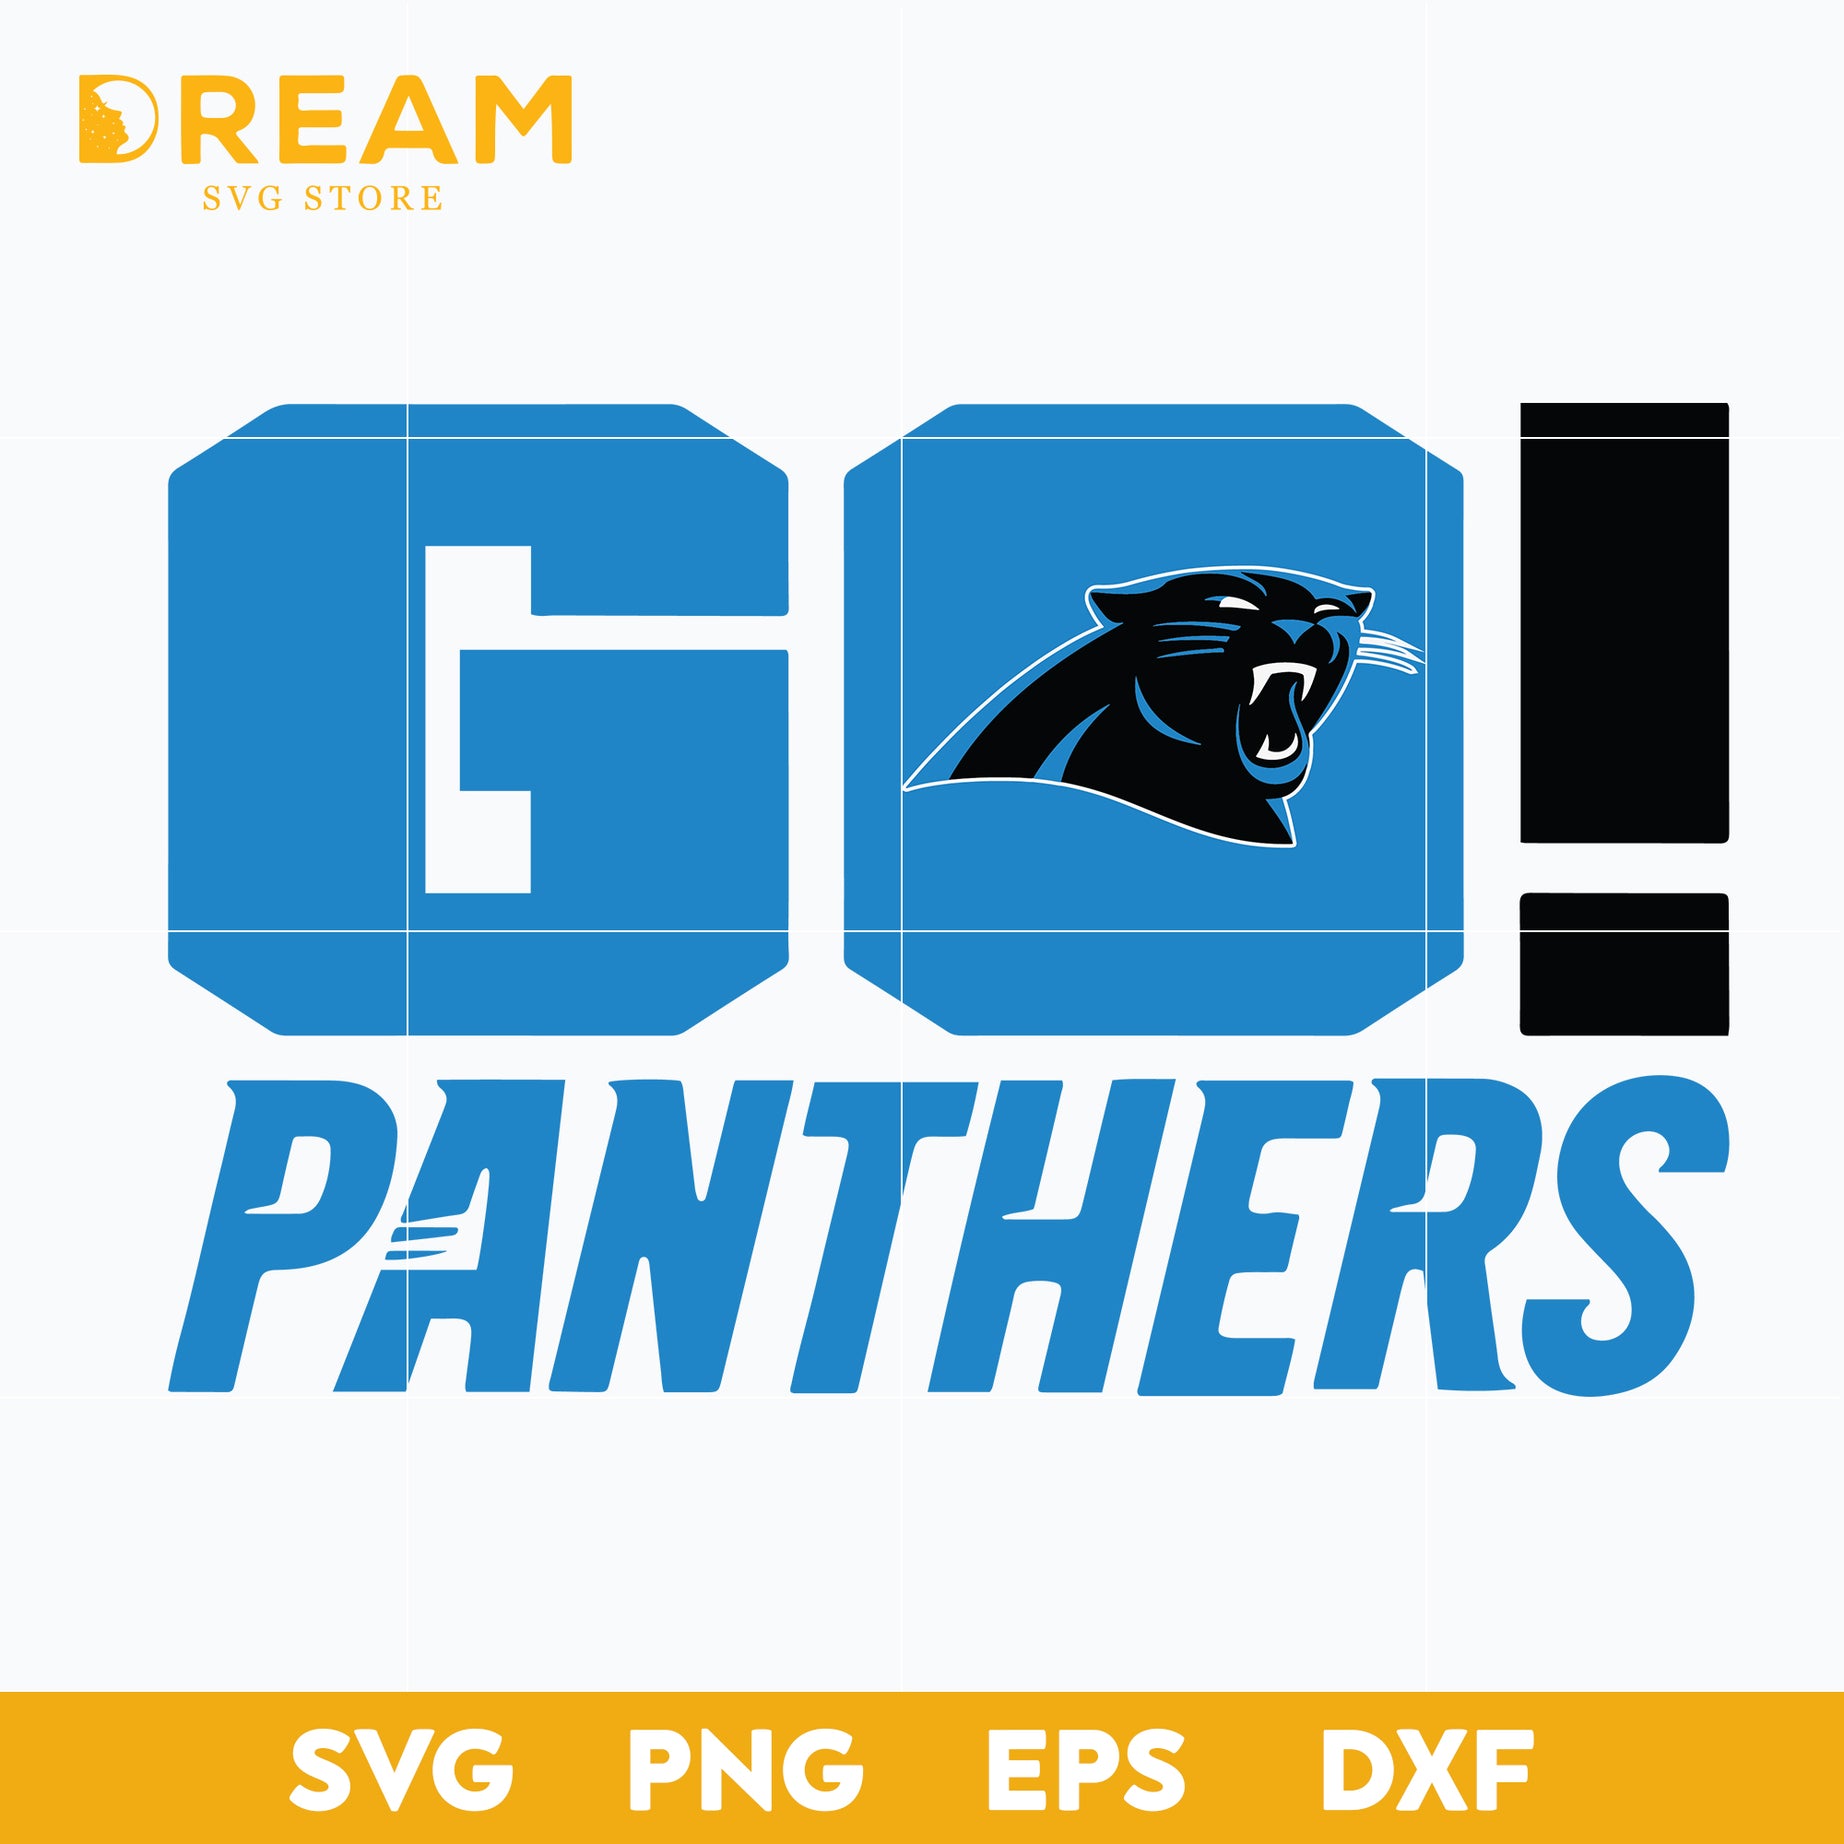 Go Panthers svg, Panthers svg, Nfl svg, png, dxf, eps digital file NFL30102014L